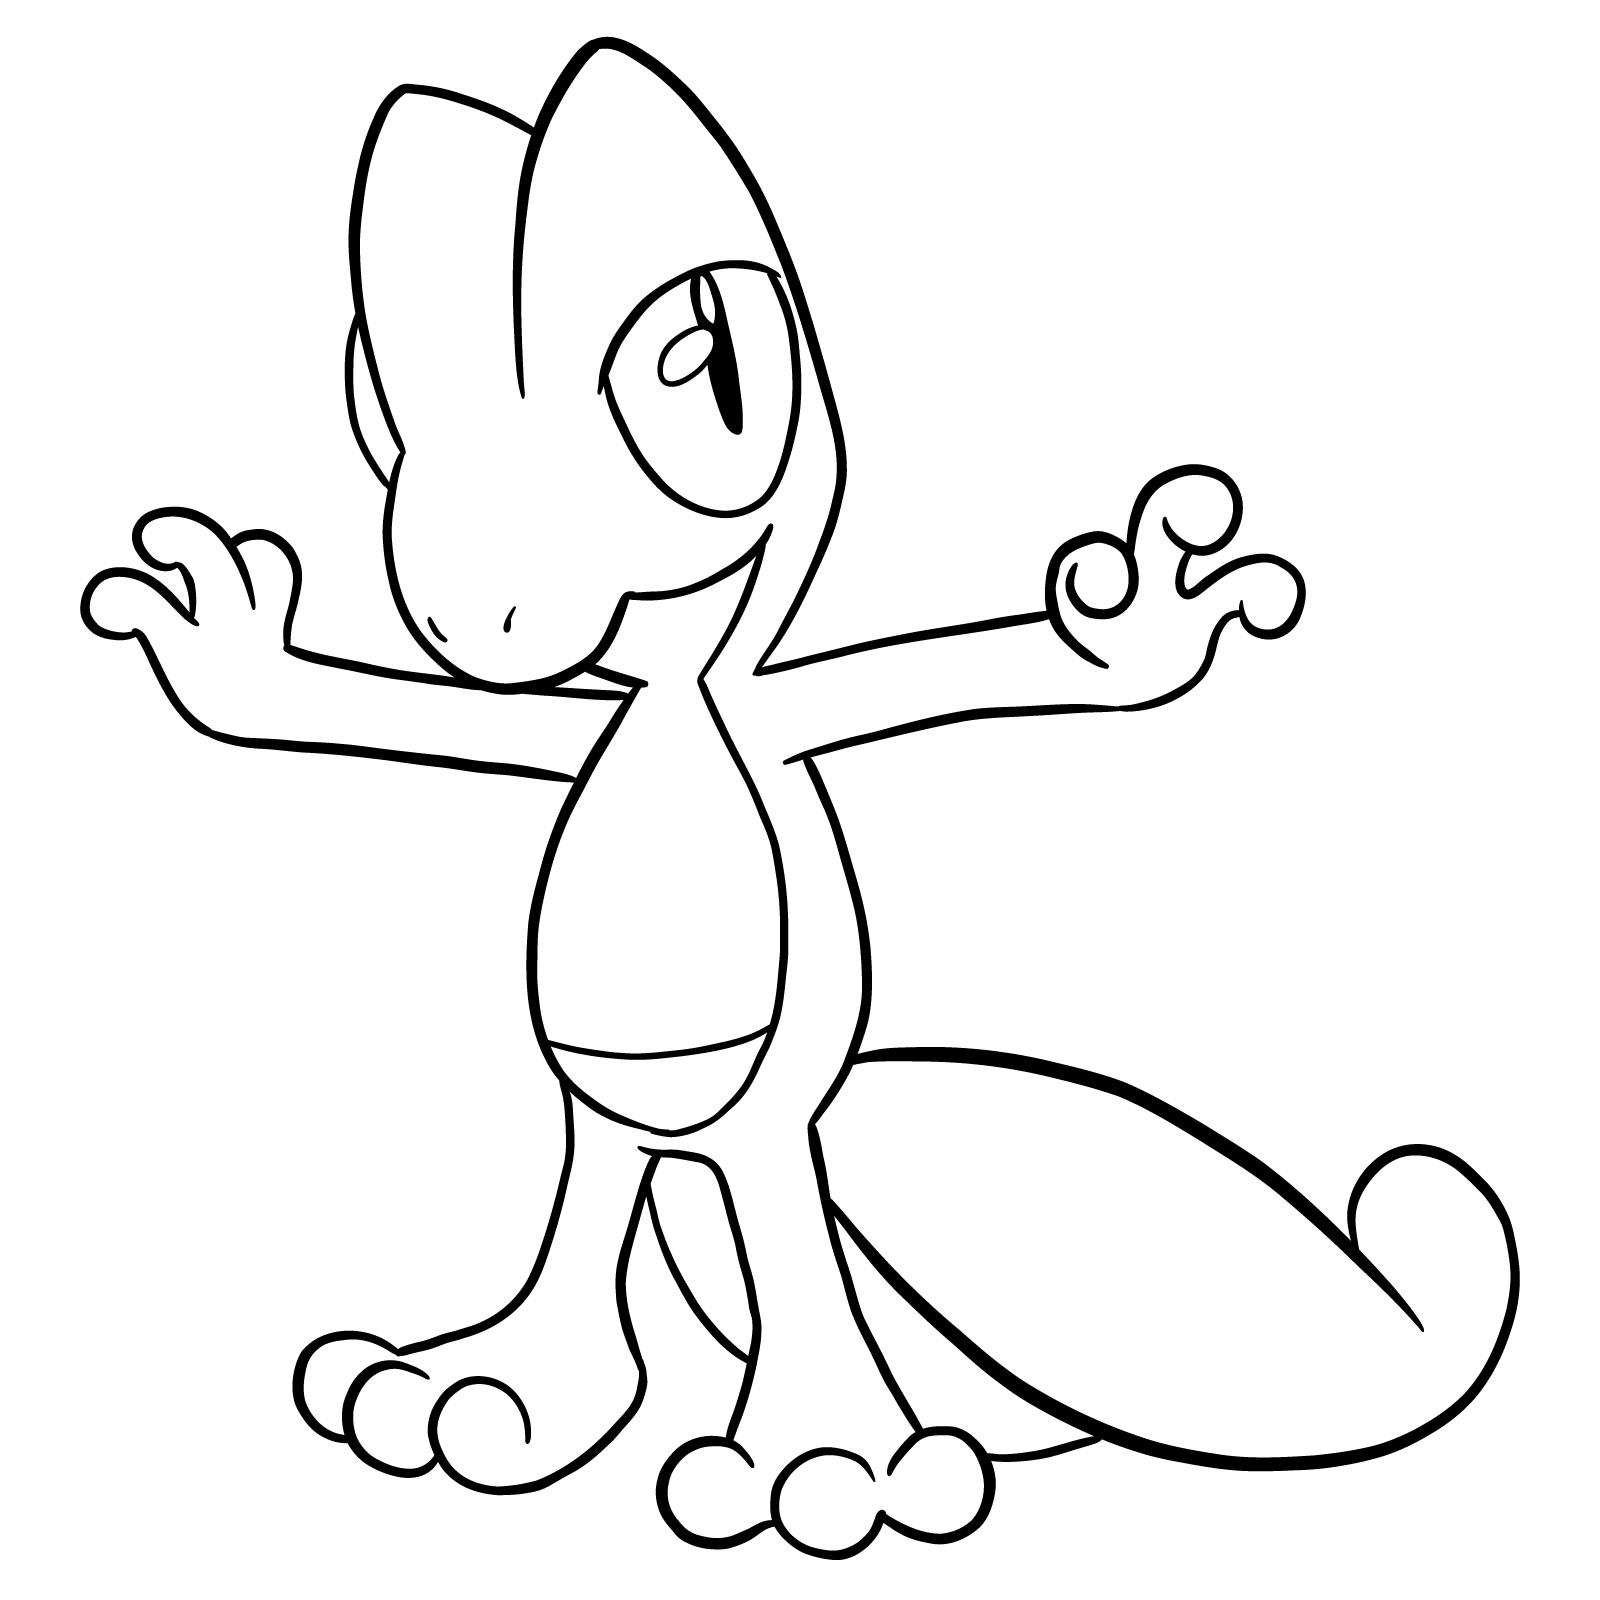 How to draw Treecko Pokemon - step 23